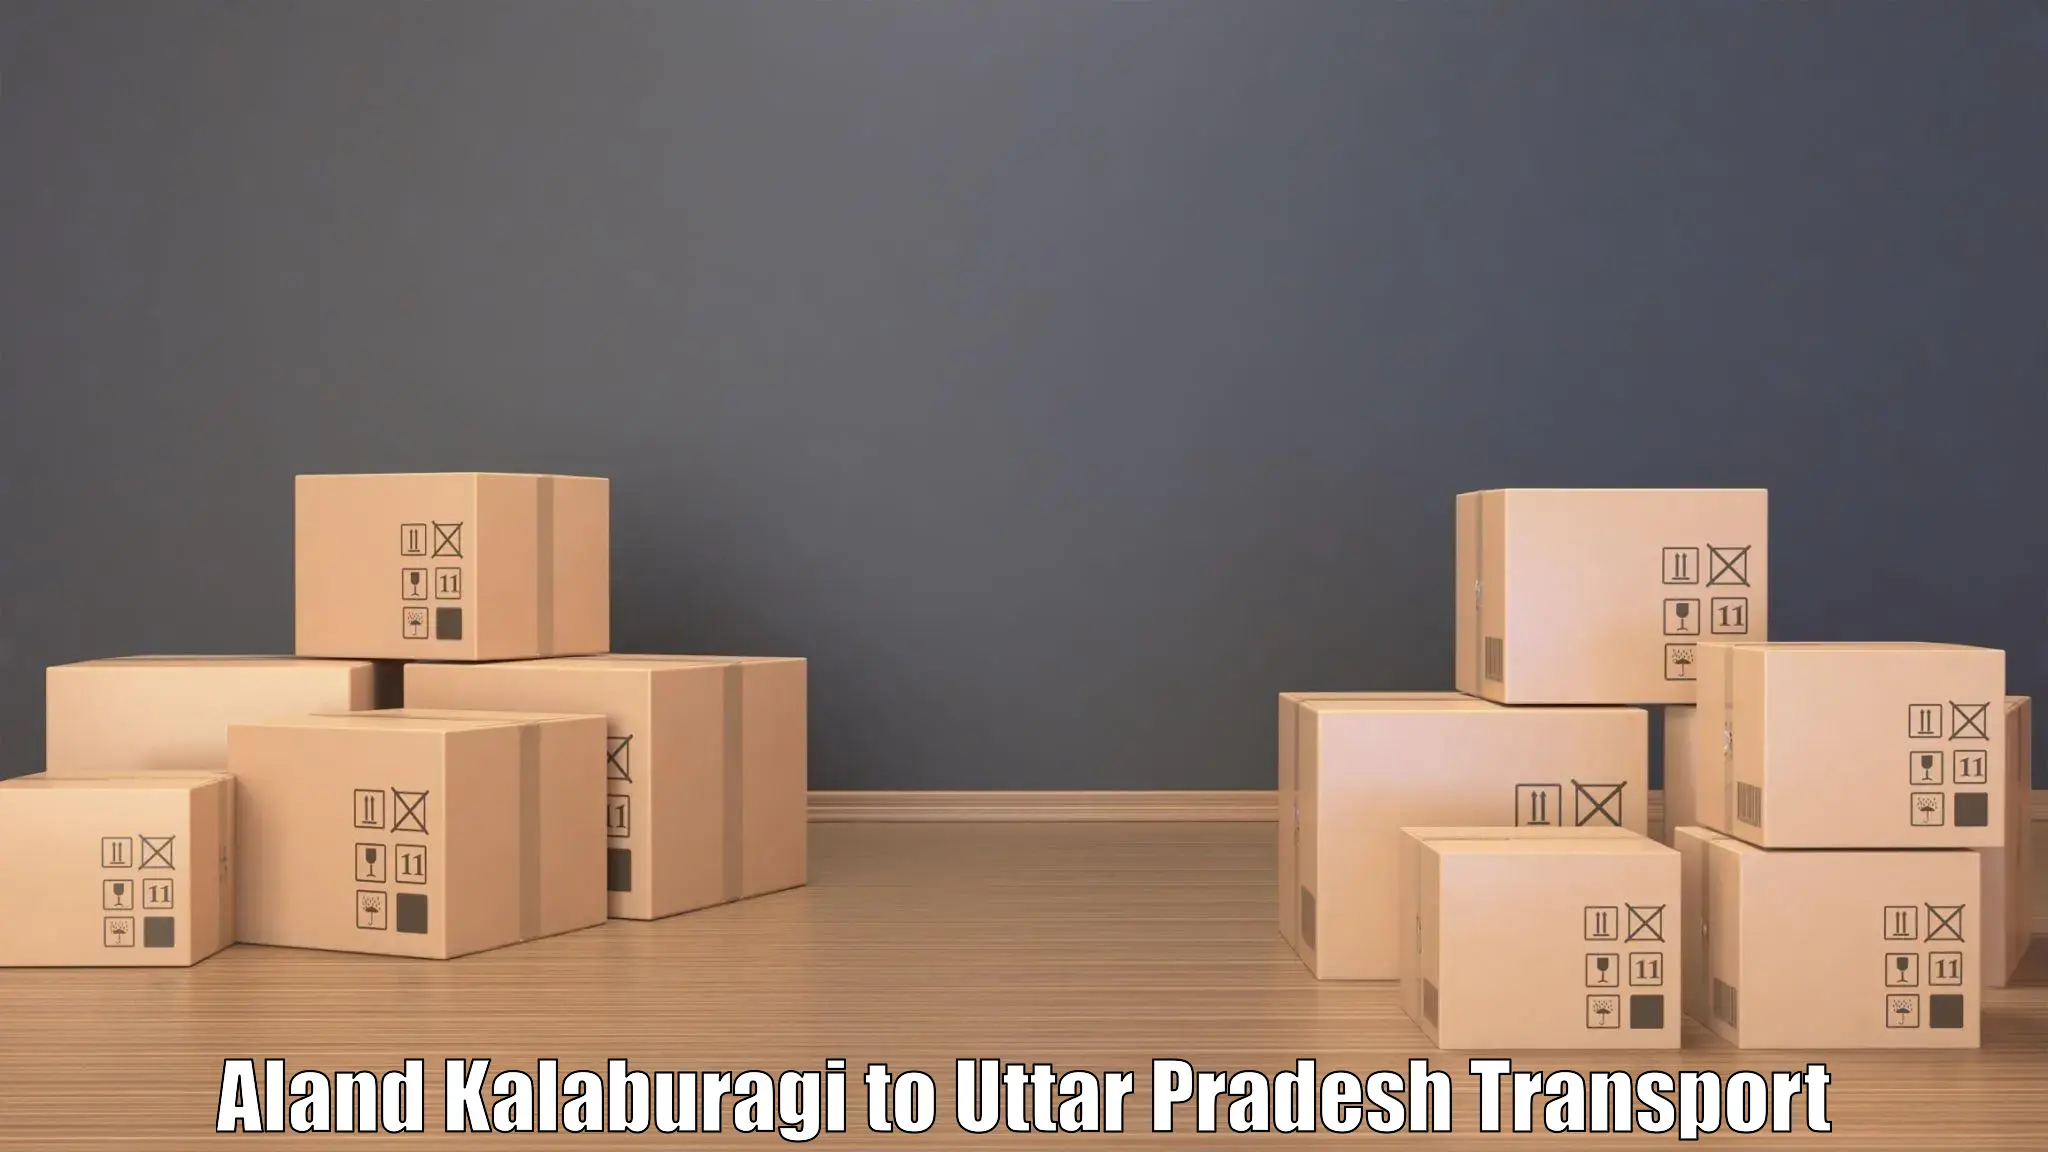 Online transport service Aland Kalaburagi to Mirzapur